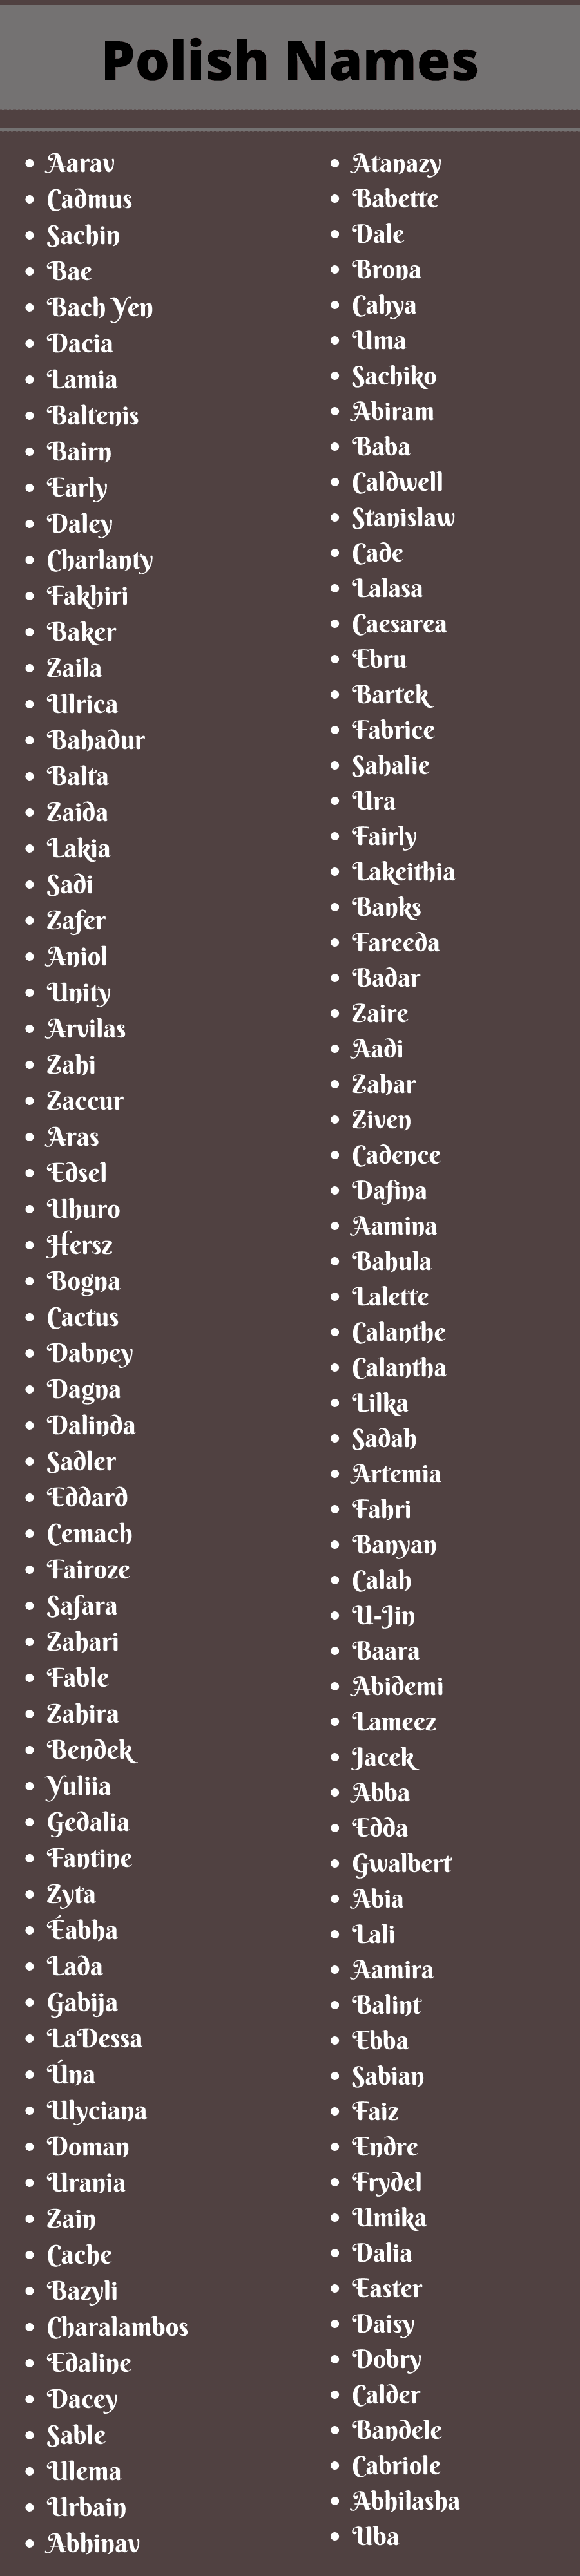 polish last names list